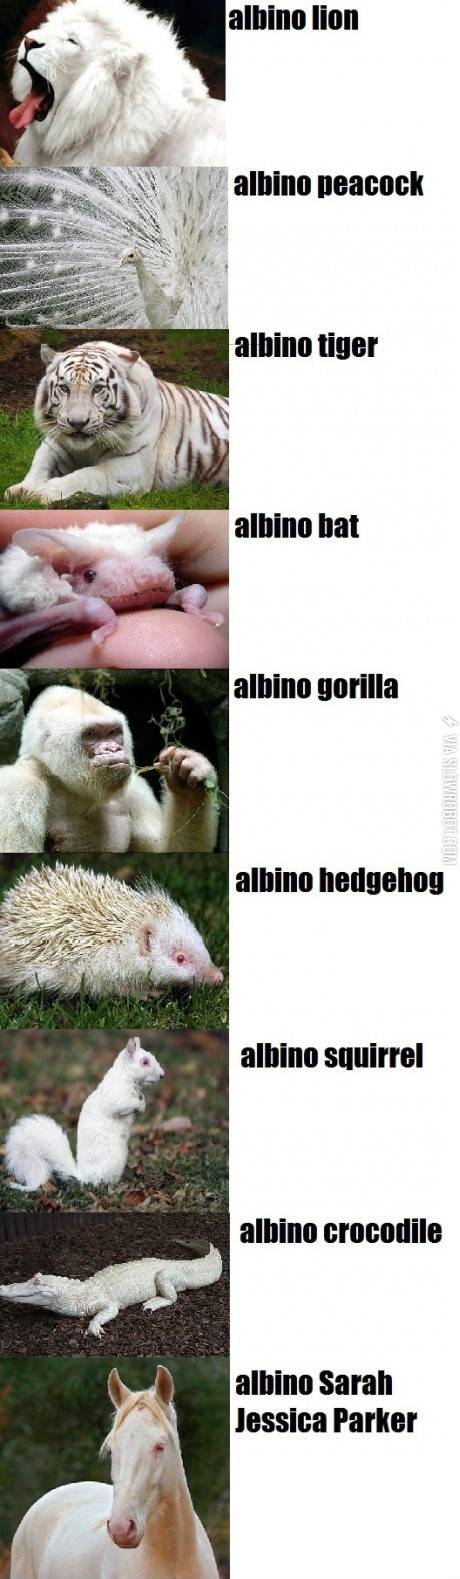 Amazing+albino+animals.